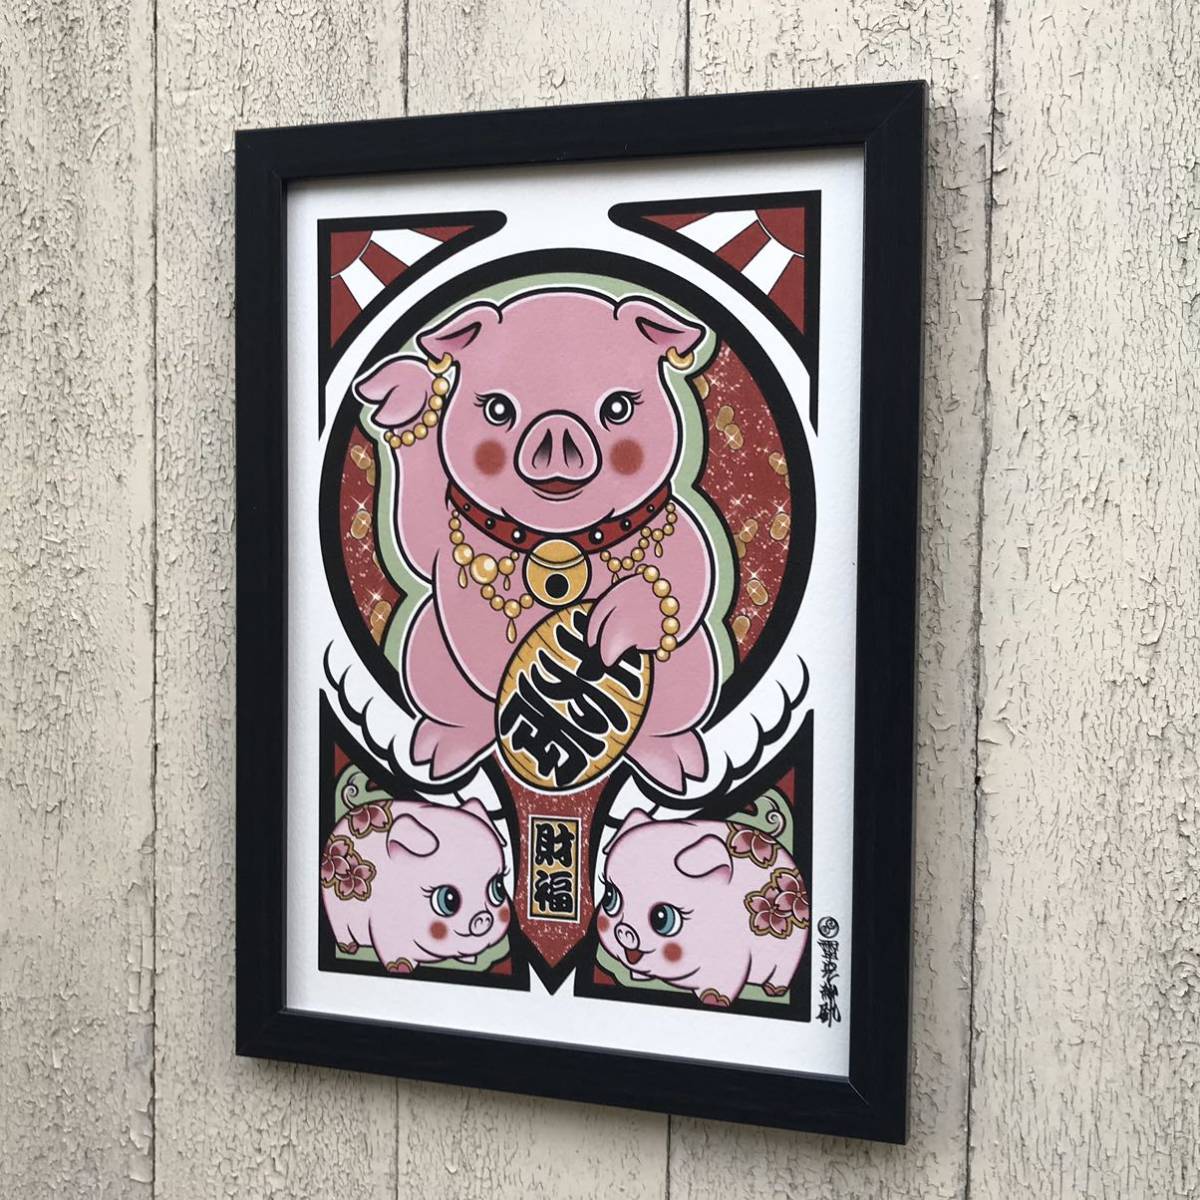 開運祈願 招福 金運アップ 縁起物 吉祥画 幸運のシンボル 招き豚 豚 イラスト A4サイズ 額縁 付き